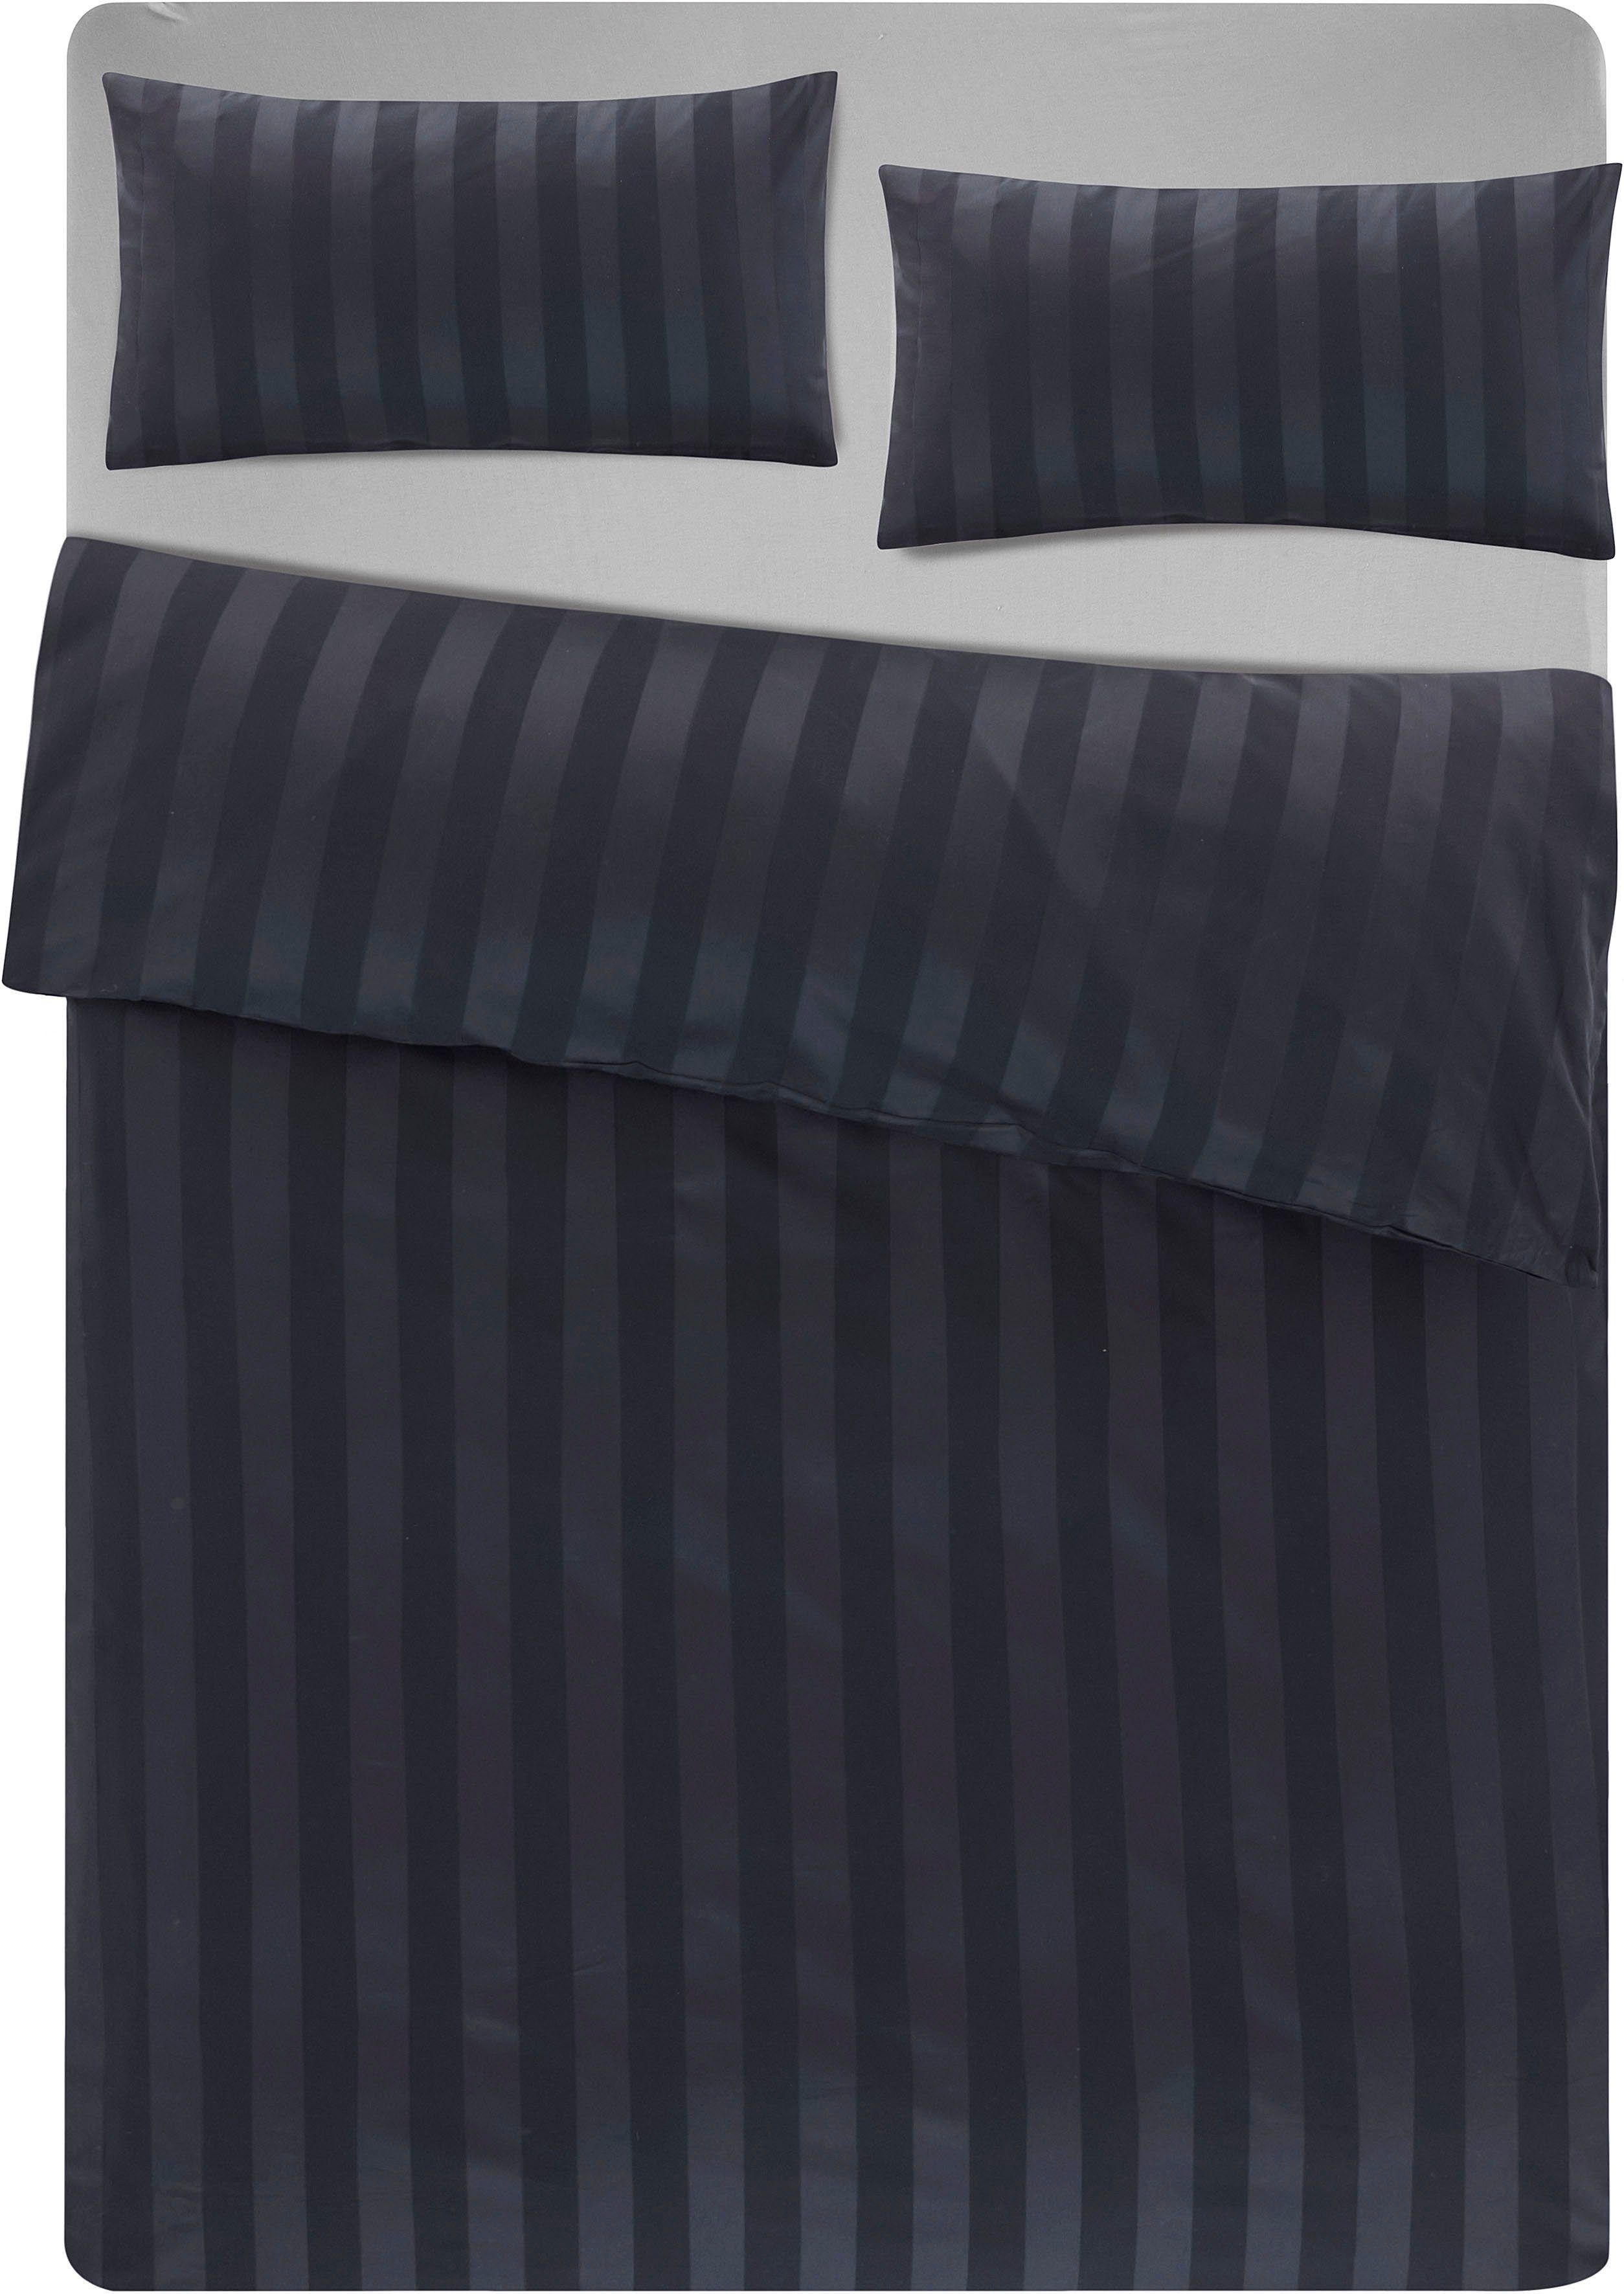 Gr. Baumwolle, oder Satin-Qualität 135x200 2 schwarz 155x220 Bettwäsche Leonique, in in Satin, Bettwäsche teilig, cm, zeitlose Bettwäsche aus Malia